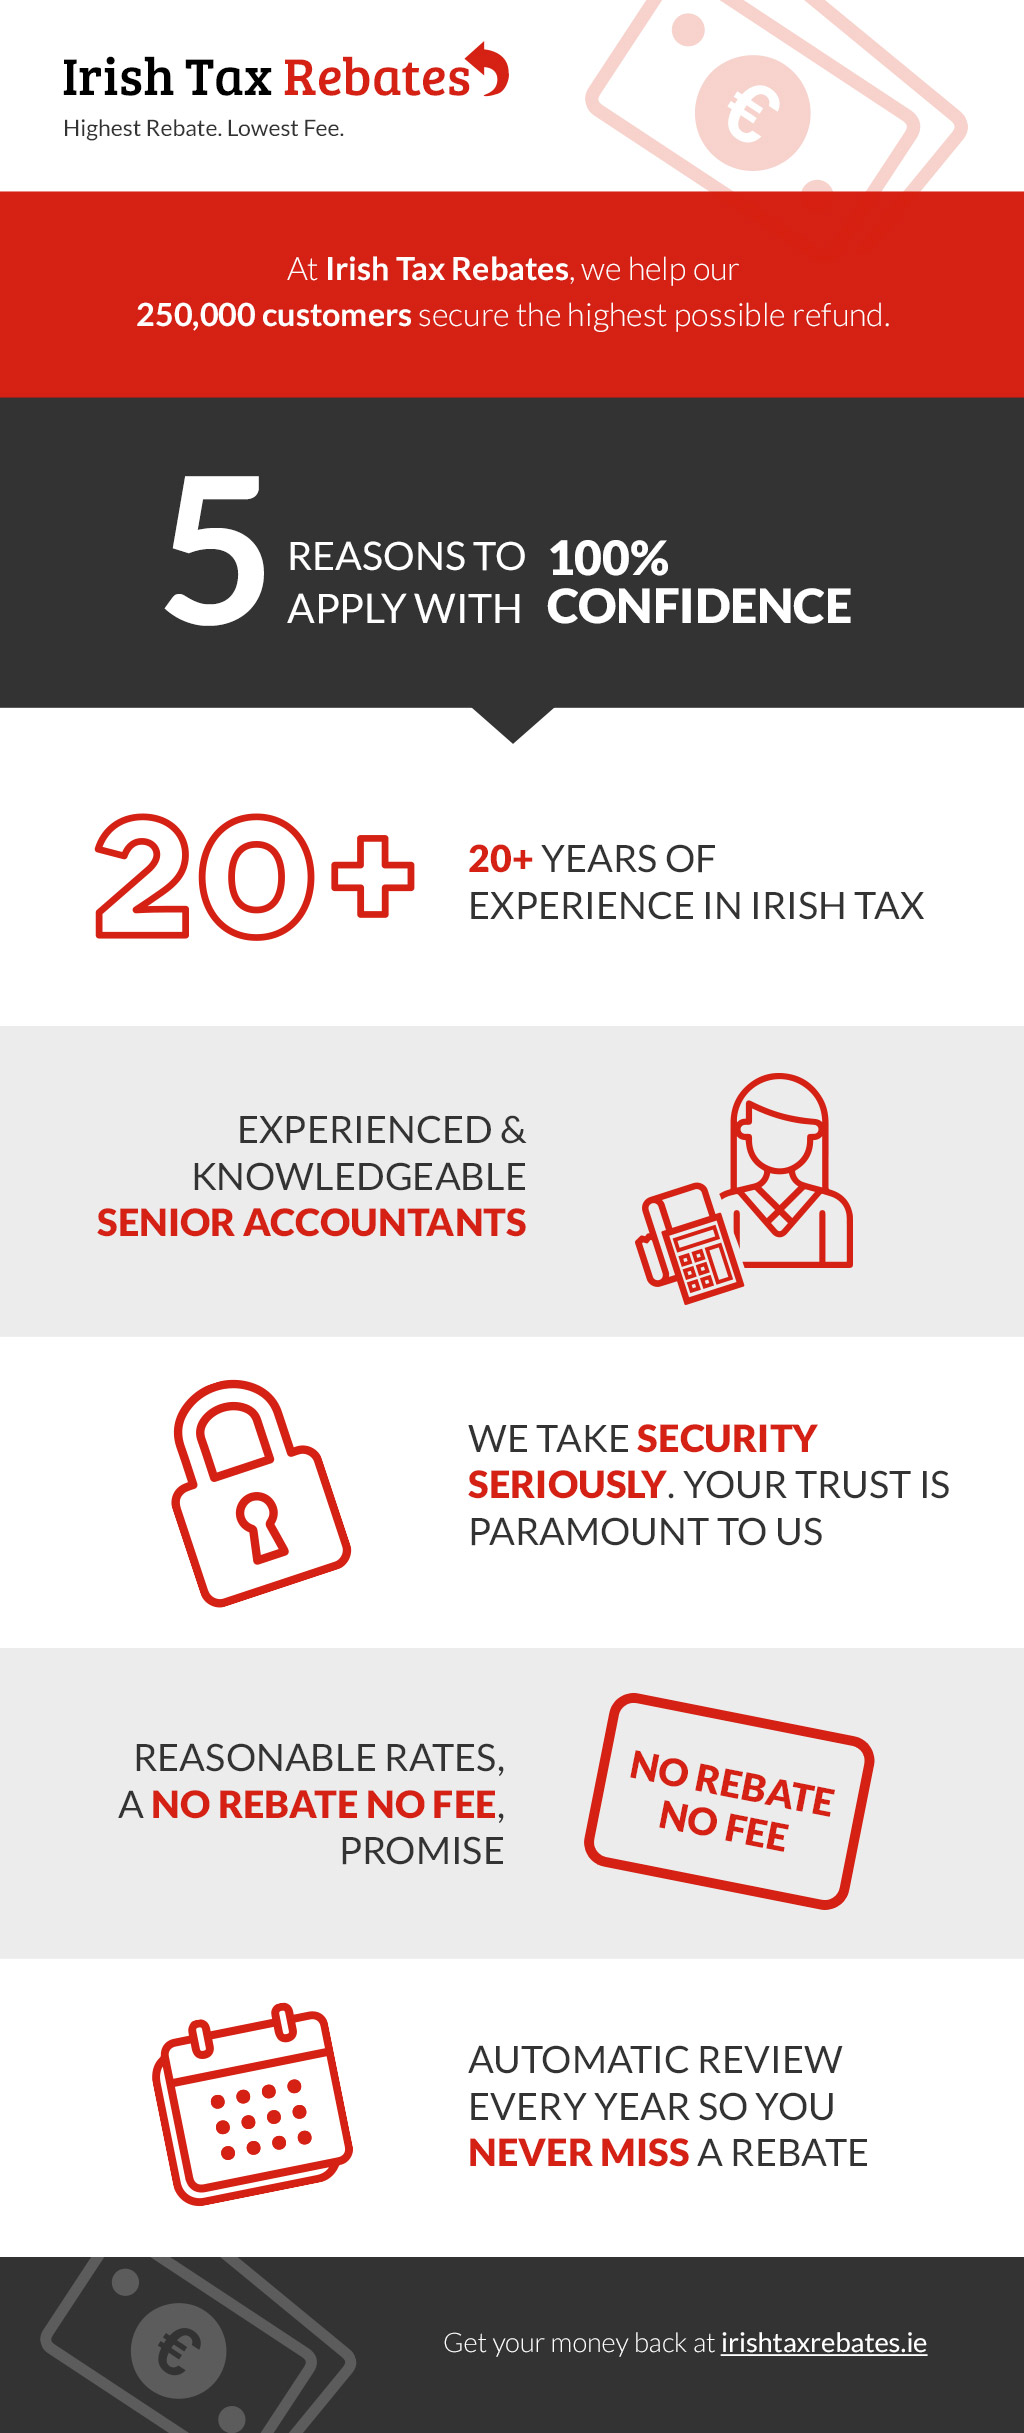 Irish Tax Rebate Ie